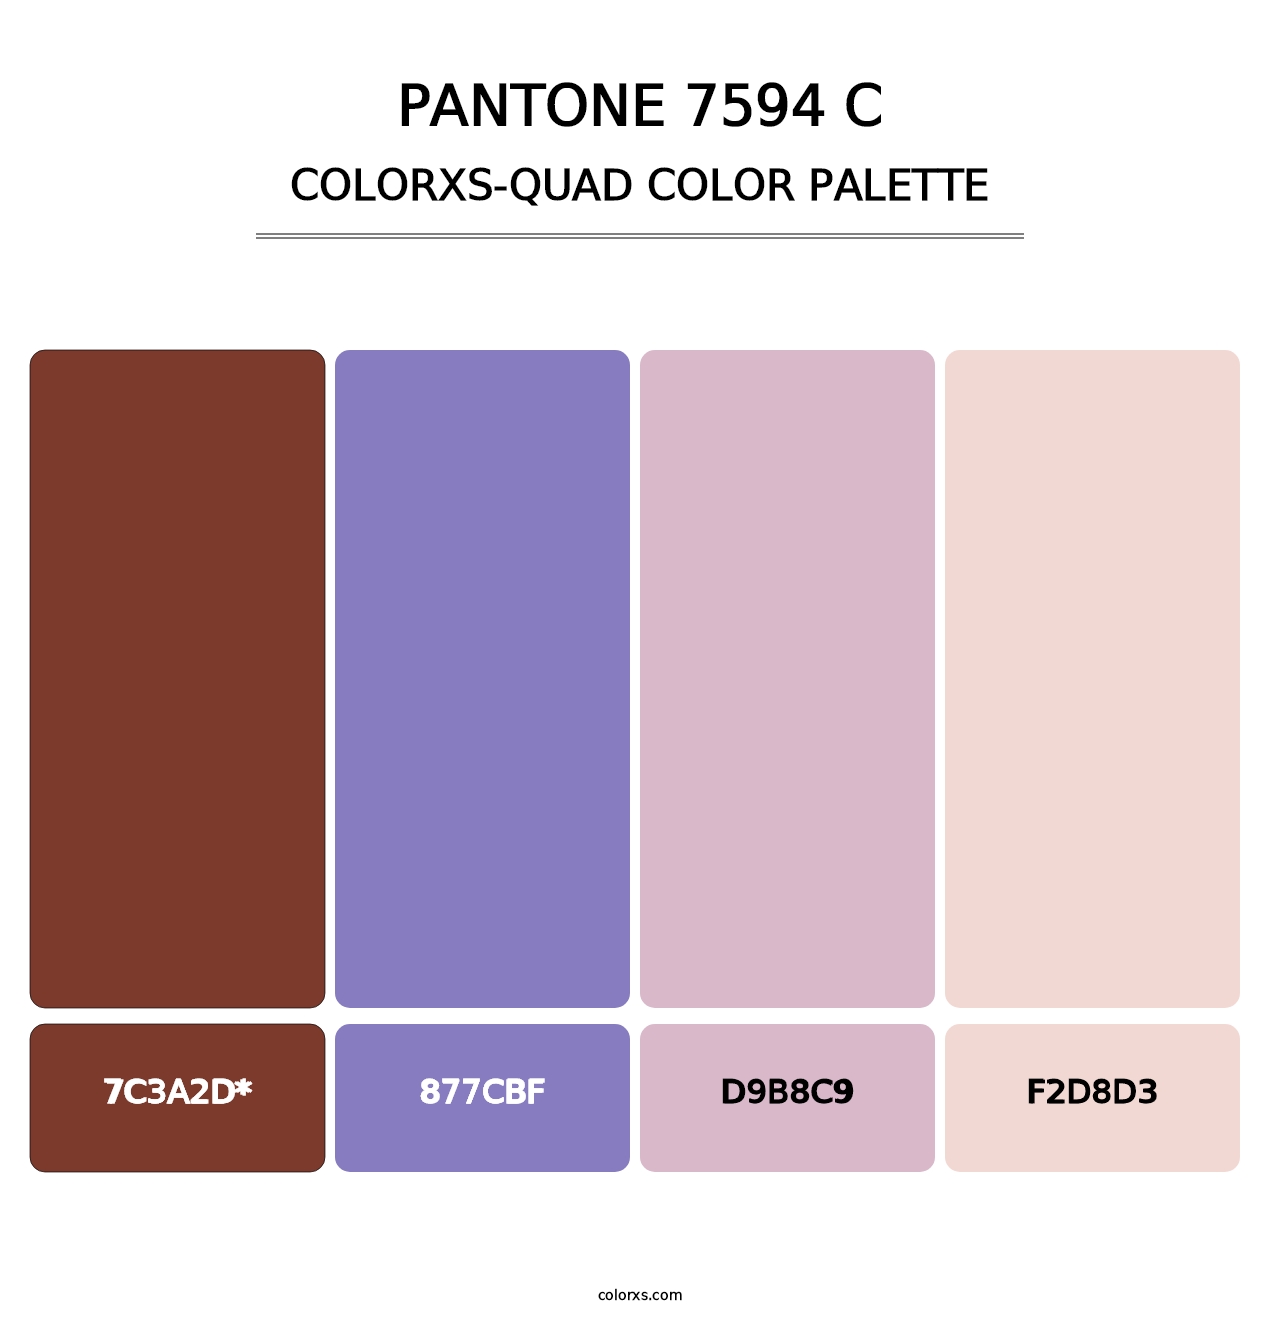 PANTONE 7594 C - Colorxs Quad Palette